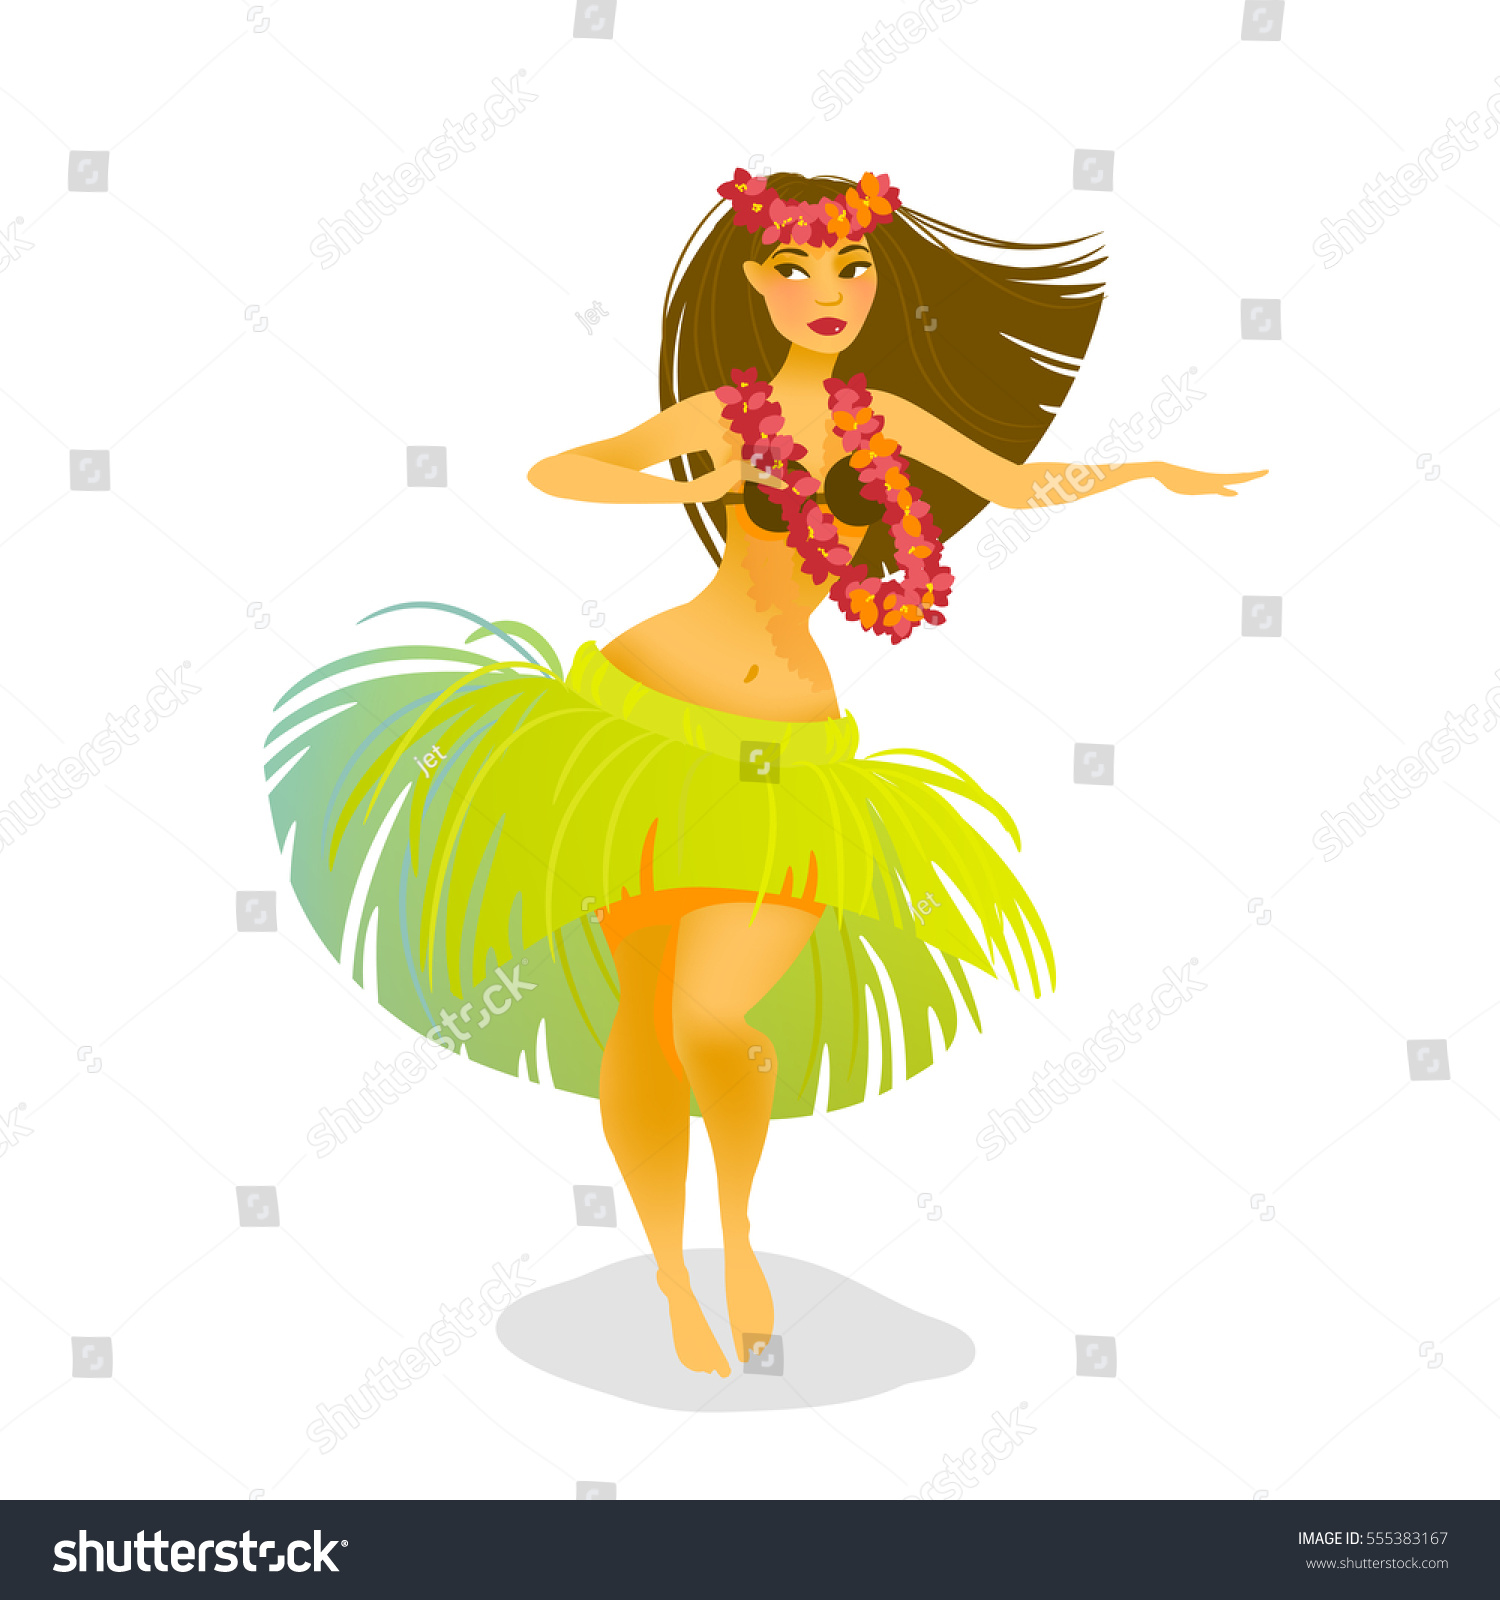 ハワイのフラダンサーの女性が草のスカートで踊っているイラスト のベクター画像素材 ロイヤリティフリー